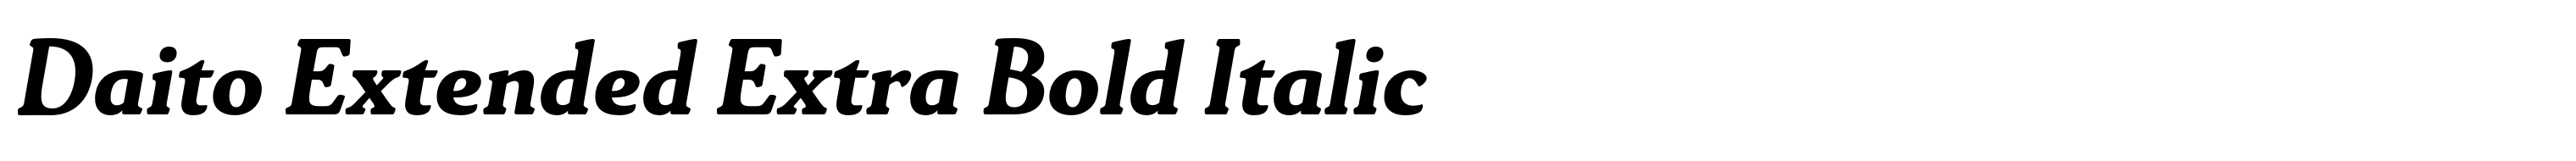 Daito Extended Extra Bold Italic